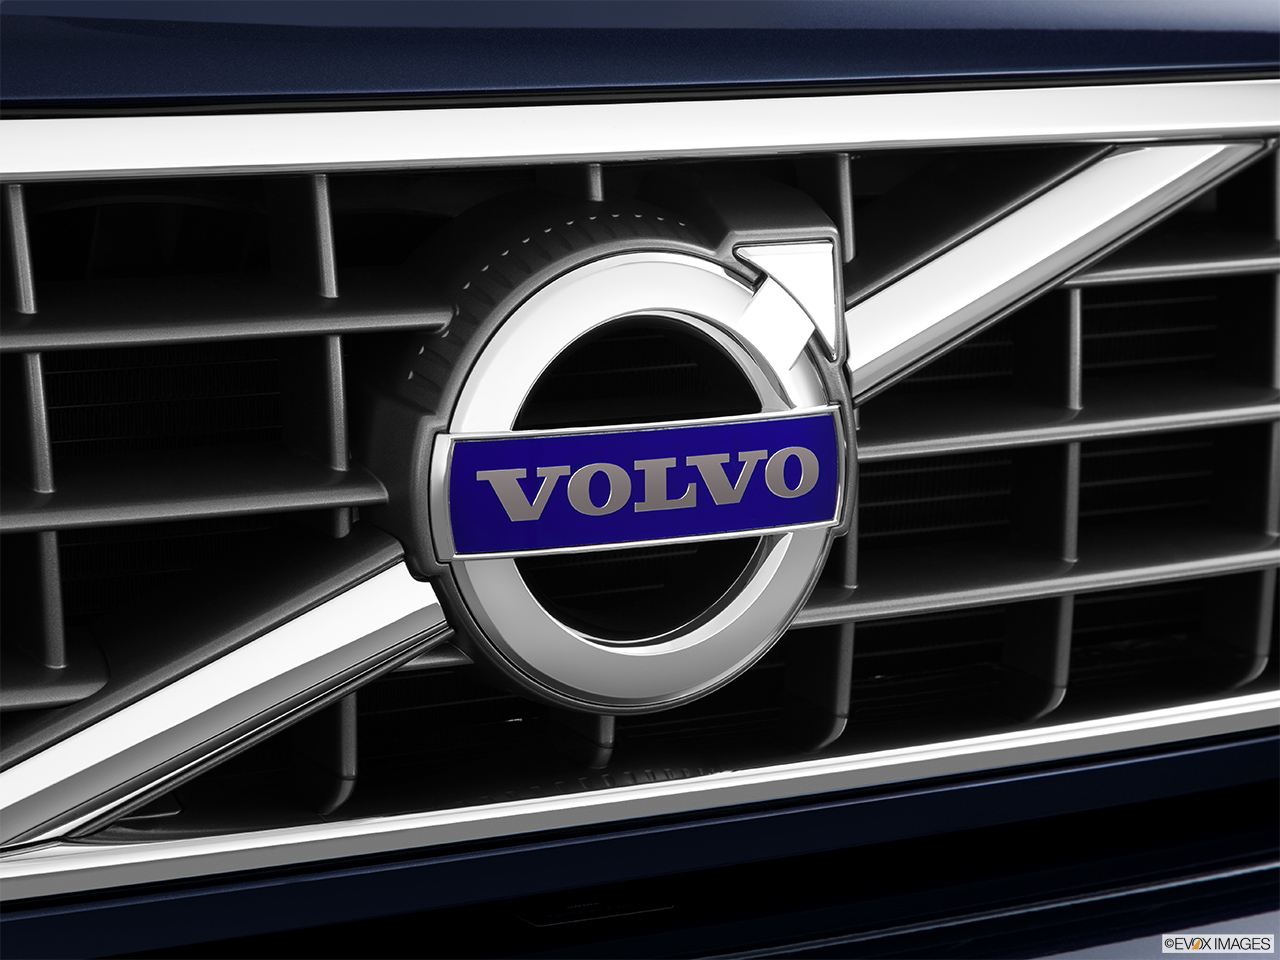 2014 Volvo XC90 3.2 FWD Premier Plus Rear manufacture badge/emblem 